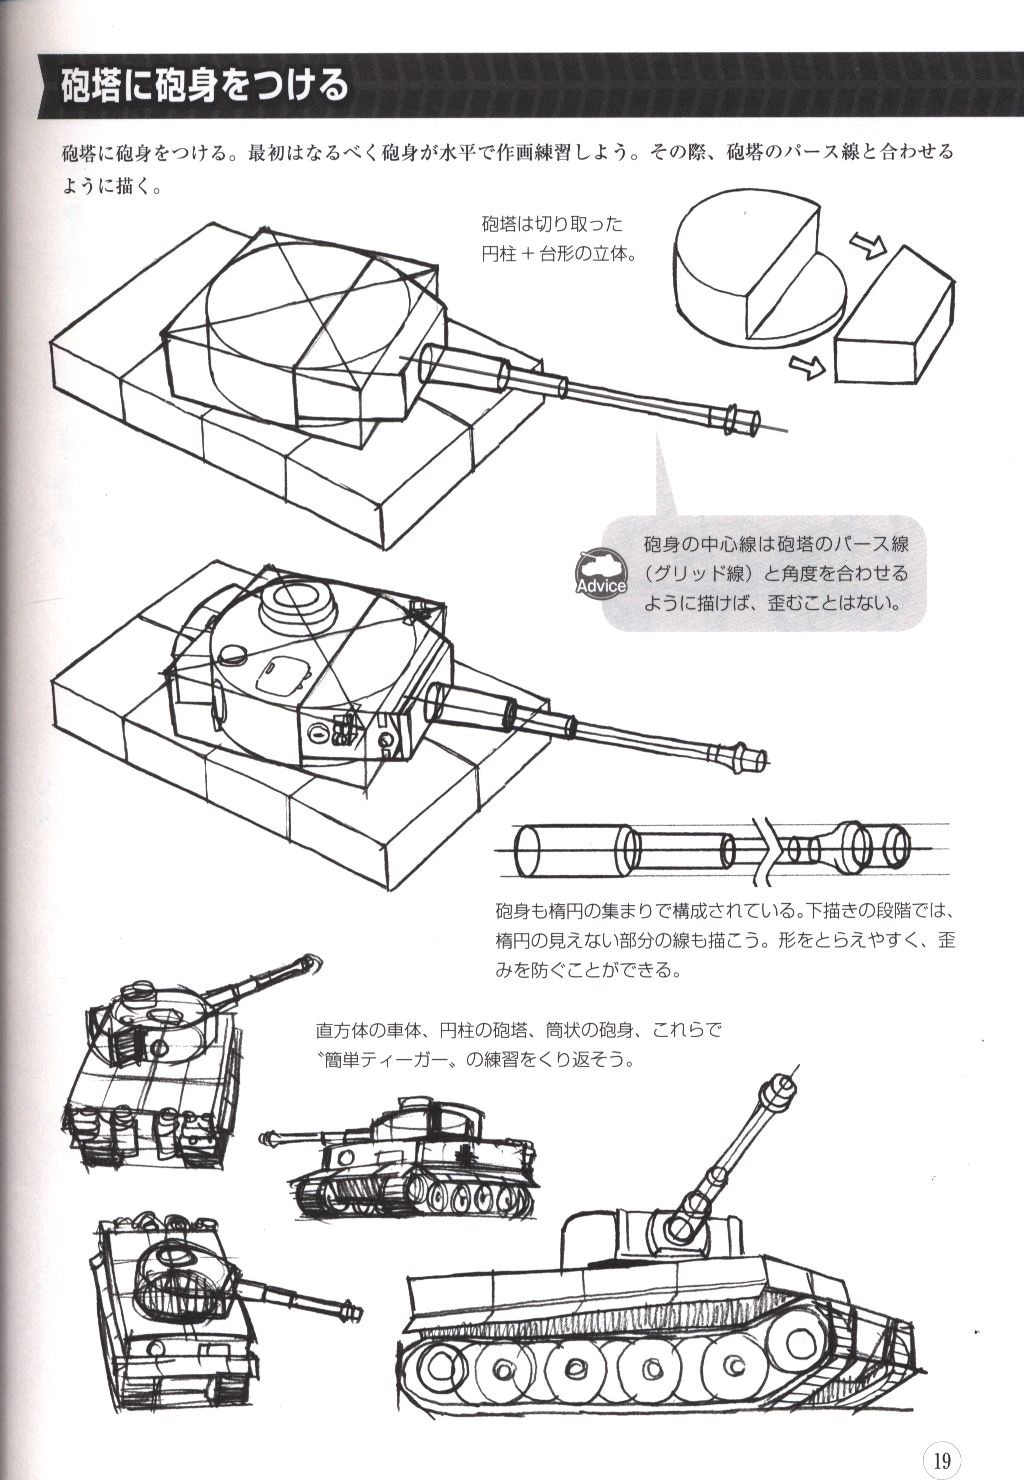 ホビージャパン 箱から描く戦車 装甲車輌のテクニック 戦車の描き方 まんだらけ Mandarake